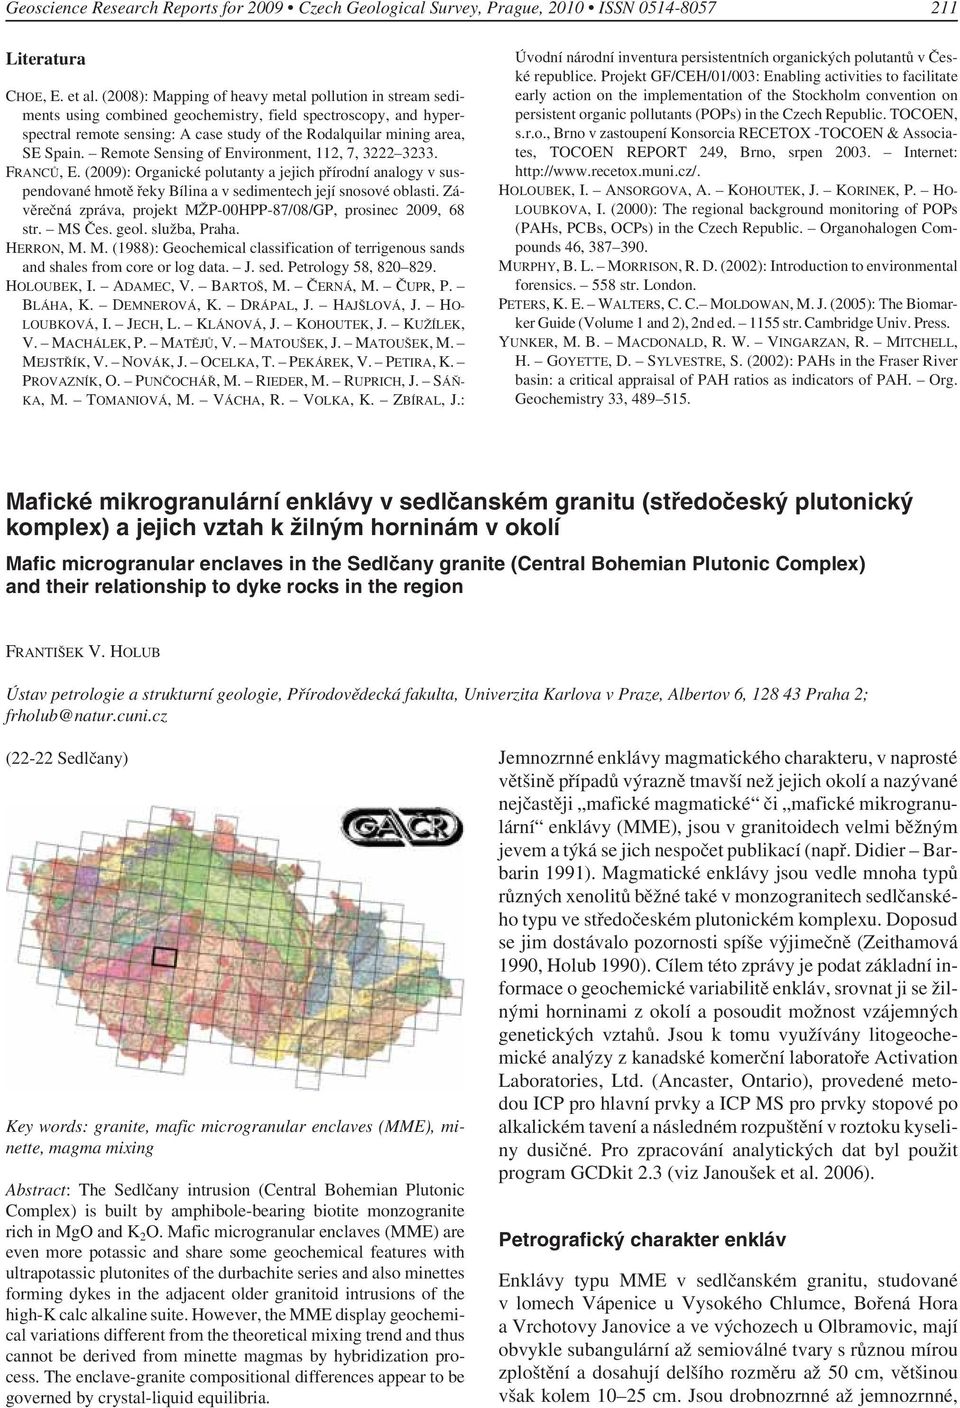 Remote Sensing of Environment, 112, 7, 3222 3233. FRANCŮ, E. (2009): Organické polutanty a jejich přírodní analogy v suspendované hmotě řeky Bílina a v sedimentech její snosové oblasti.